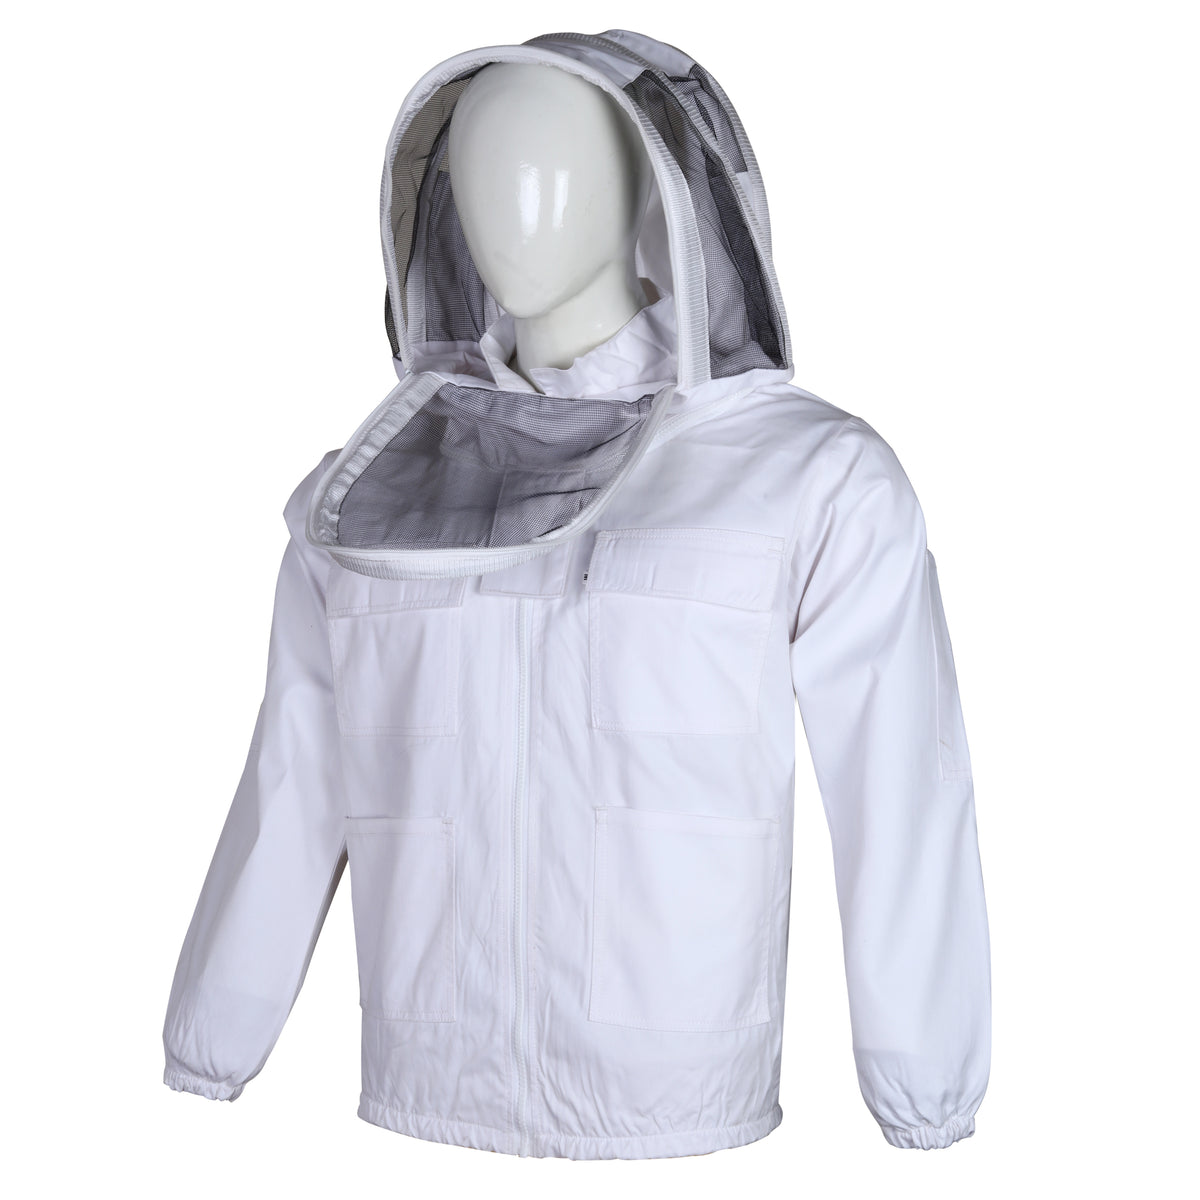 Biodling Bomull Anti-stick Skjorta För Bin Med Astronaut Fäktning Slöja